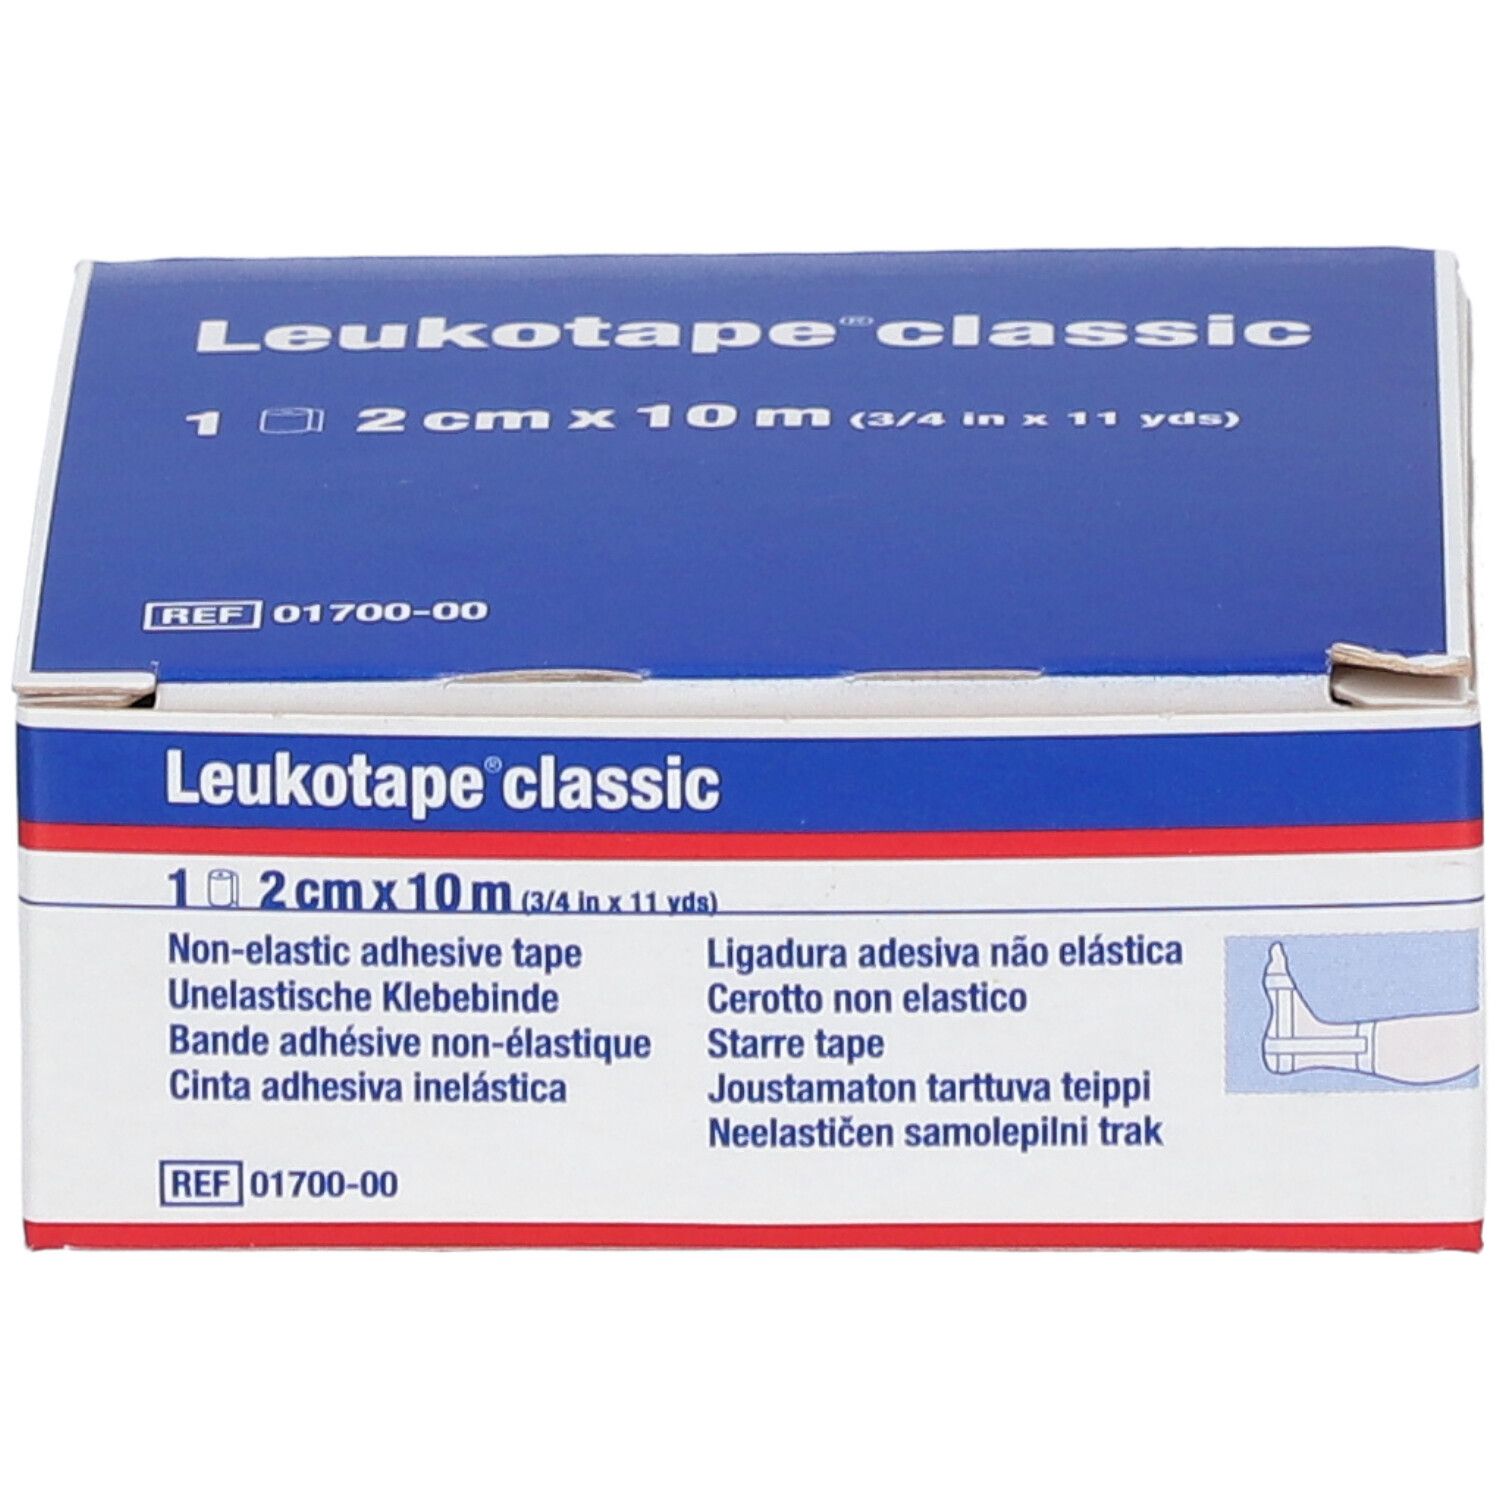 Leukotape Classic 2cm x 10m